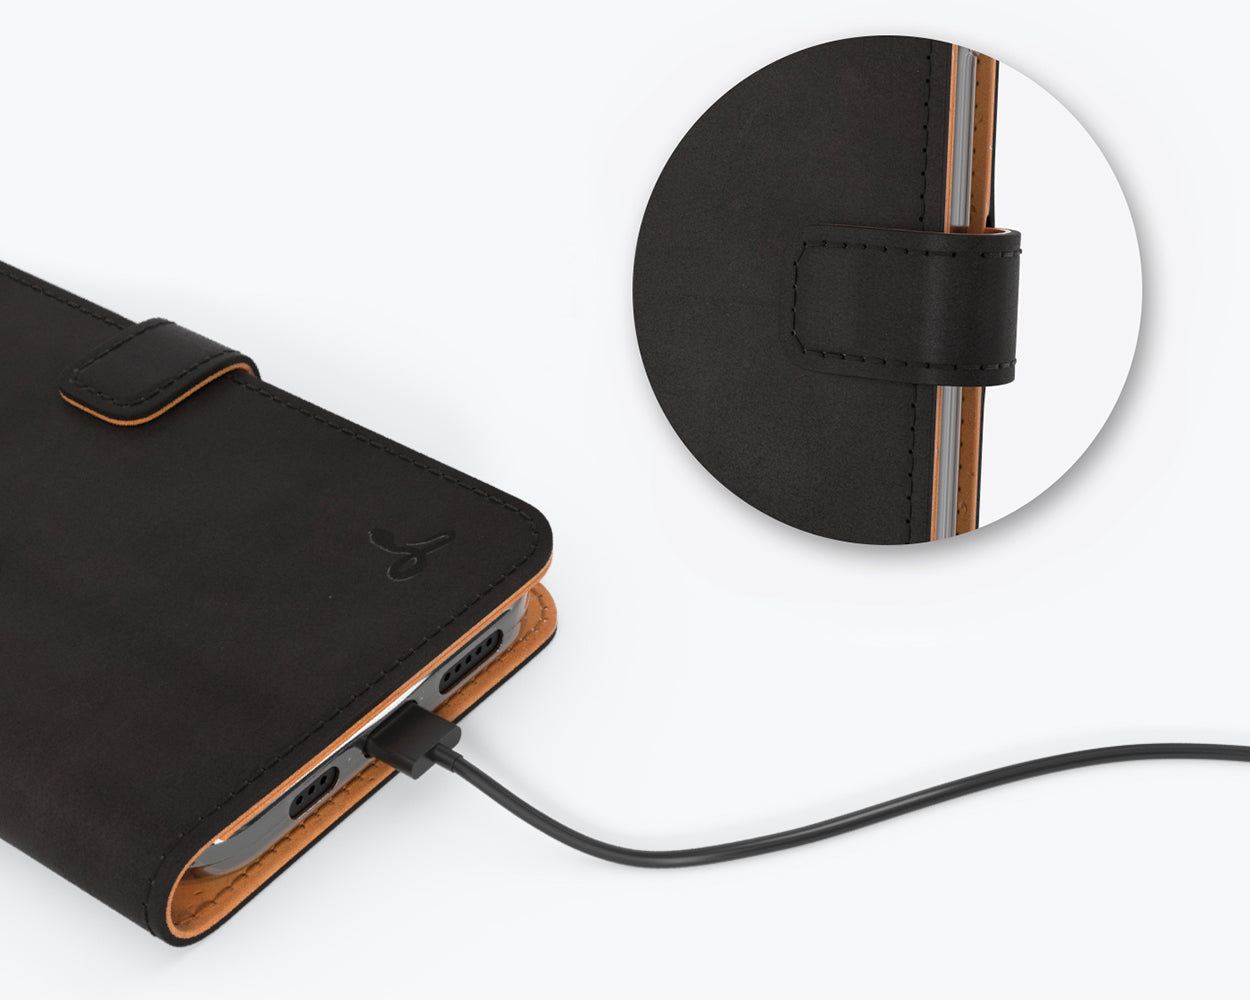 Vintage Leather Wallet - Apple iPhone 12 Mini